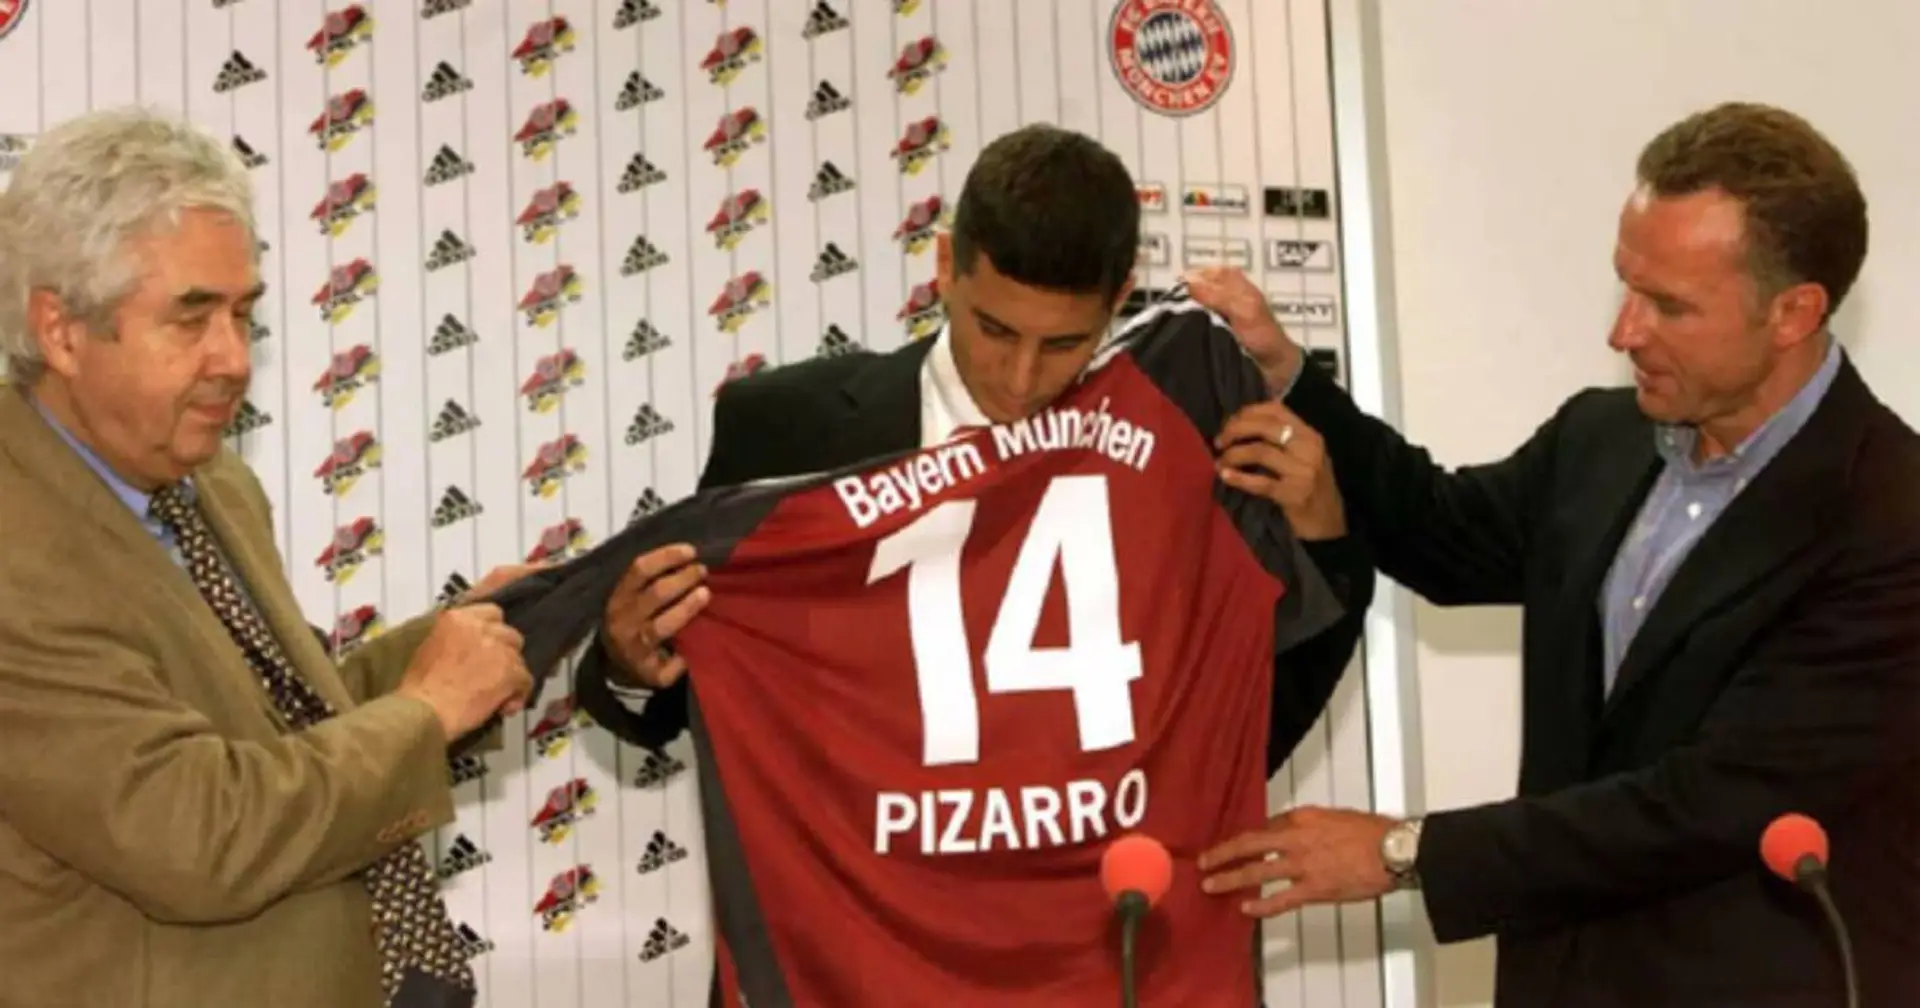 Claudio Pizarro wird 45: Er entschied sich einst gegen einen Wechsel zu Real und ging zu Bayern